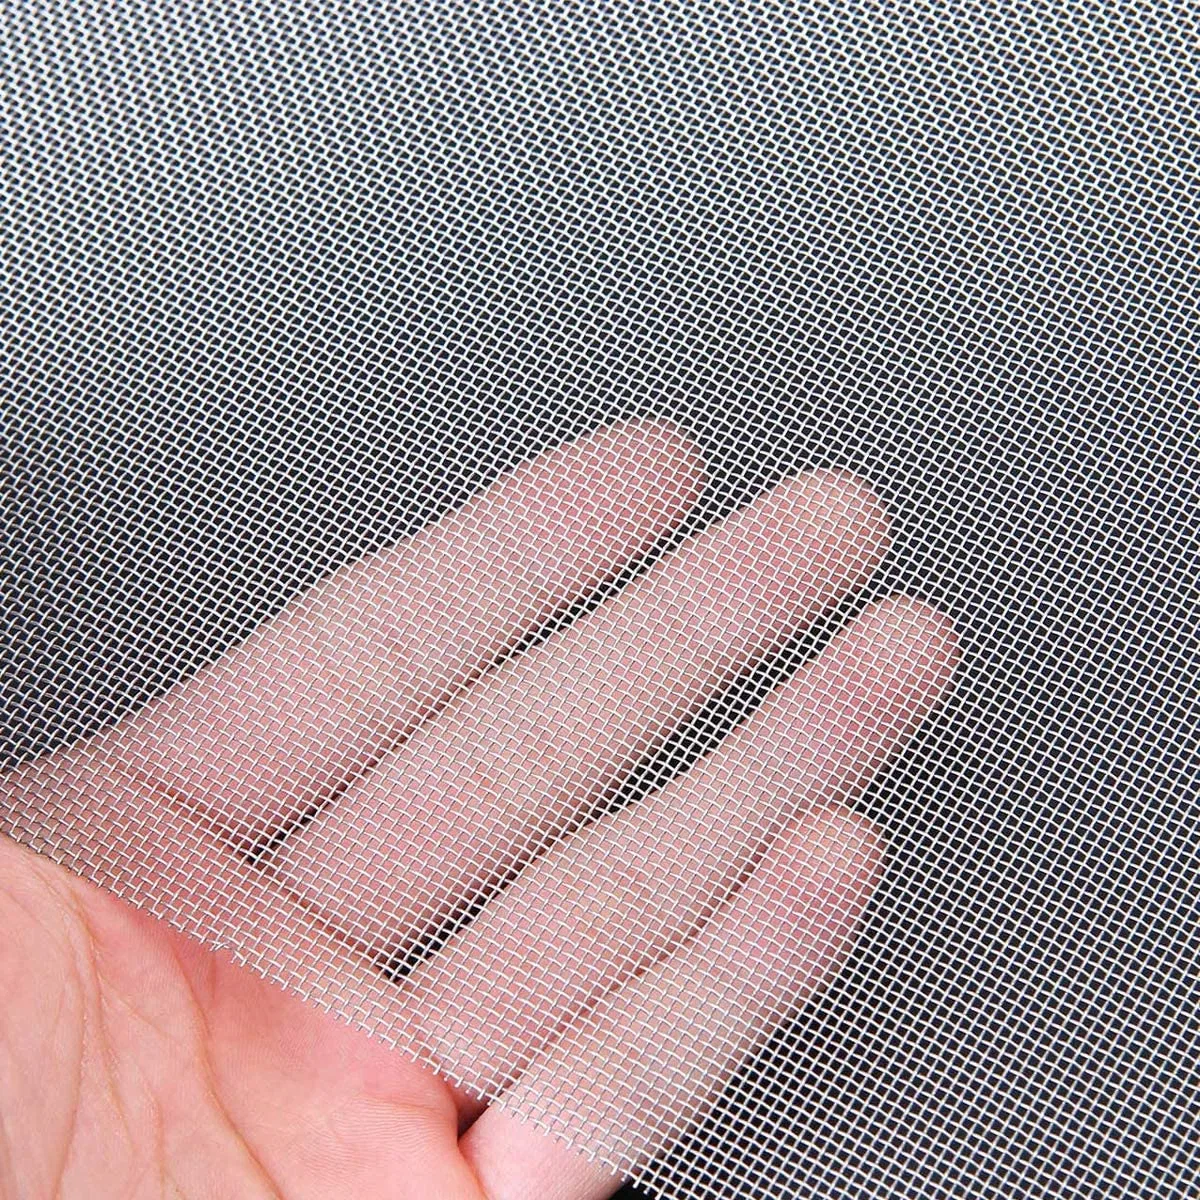 Aço inoxidável Fio do filtro de metal da malha do filtro de tecidos de rolo de tela